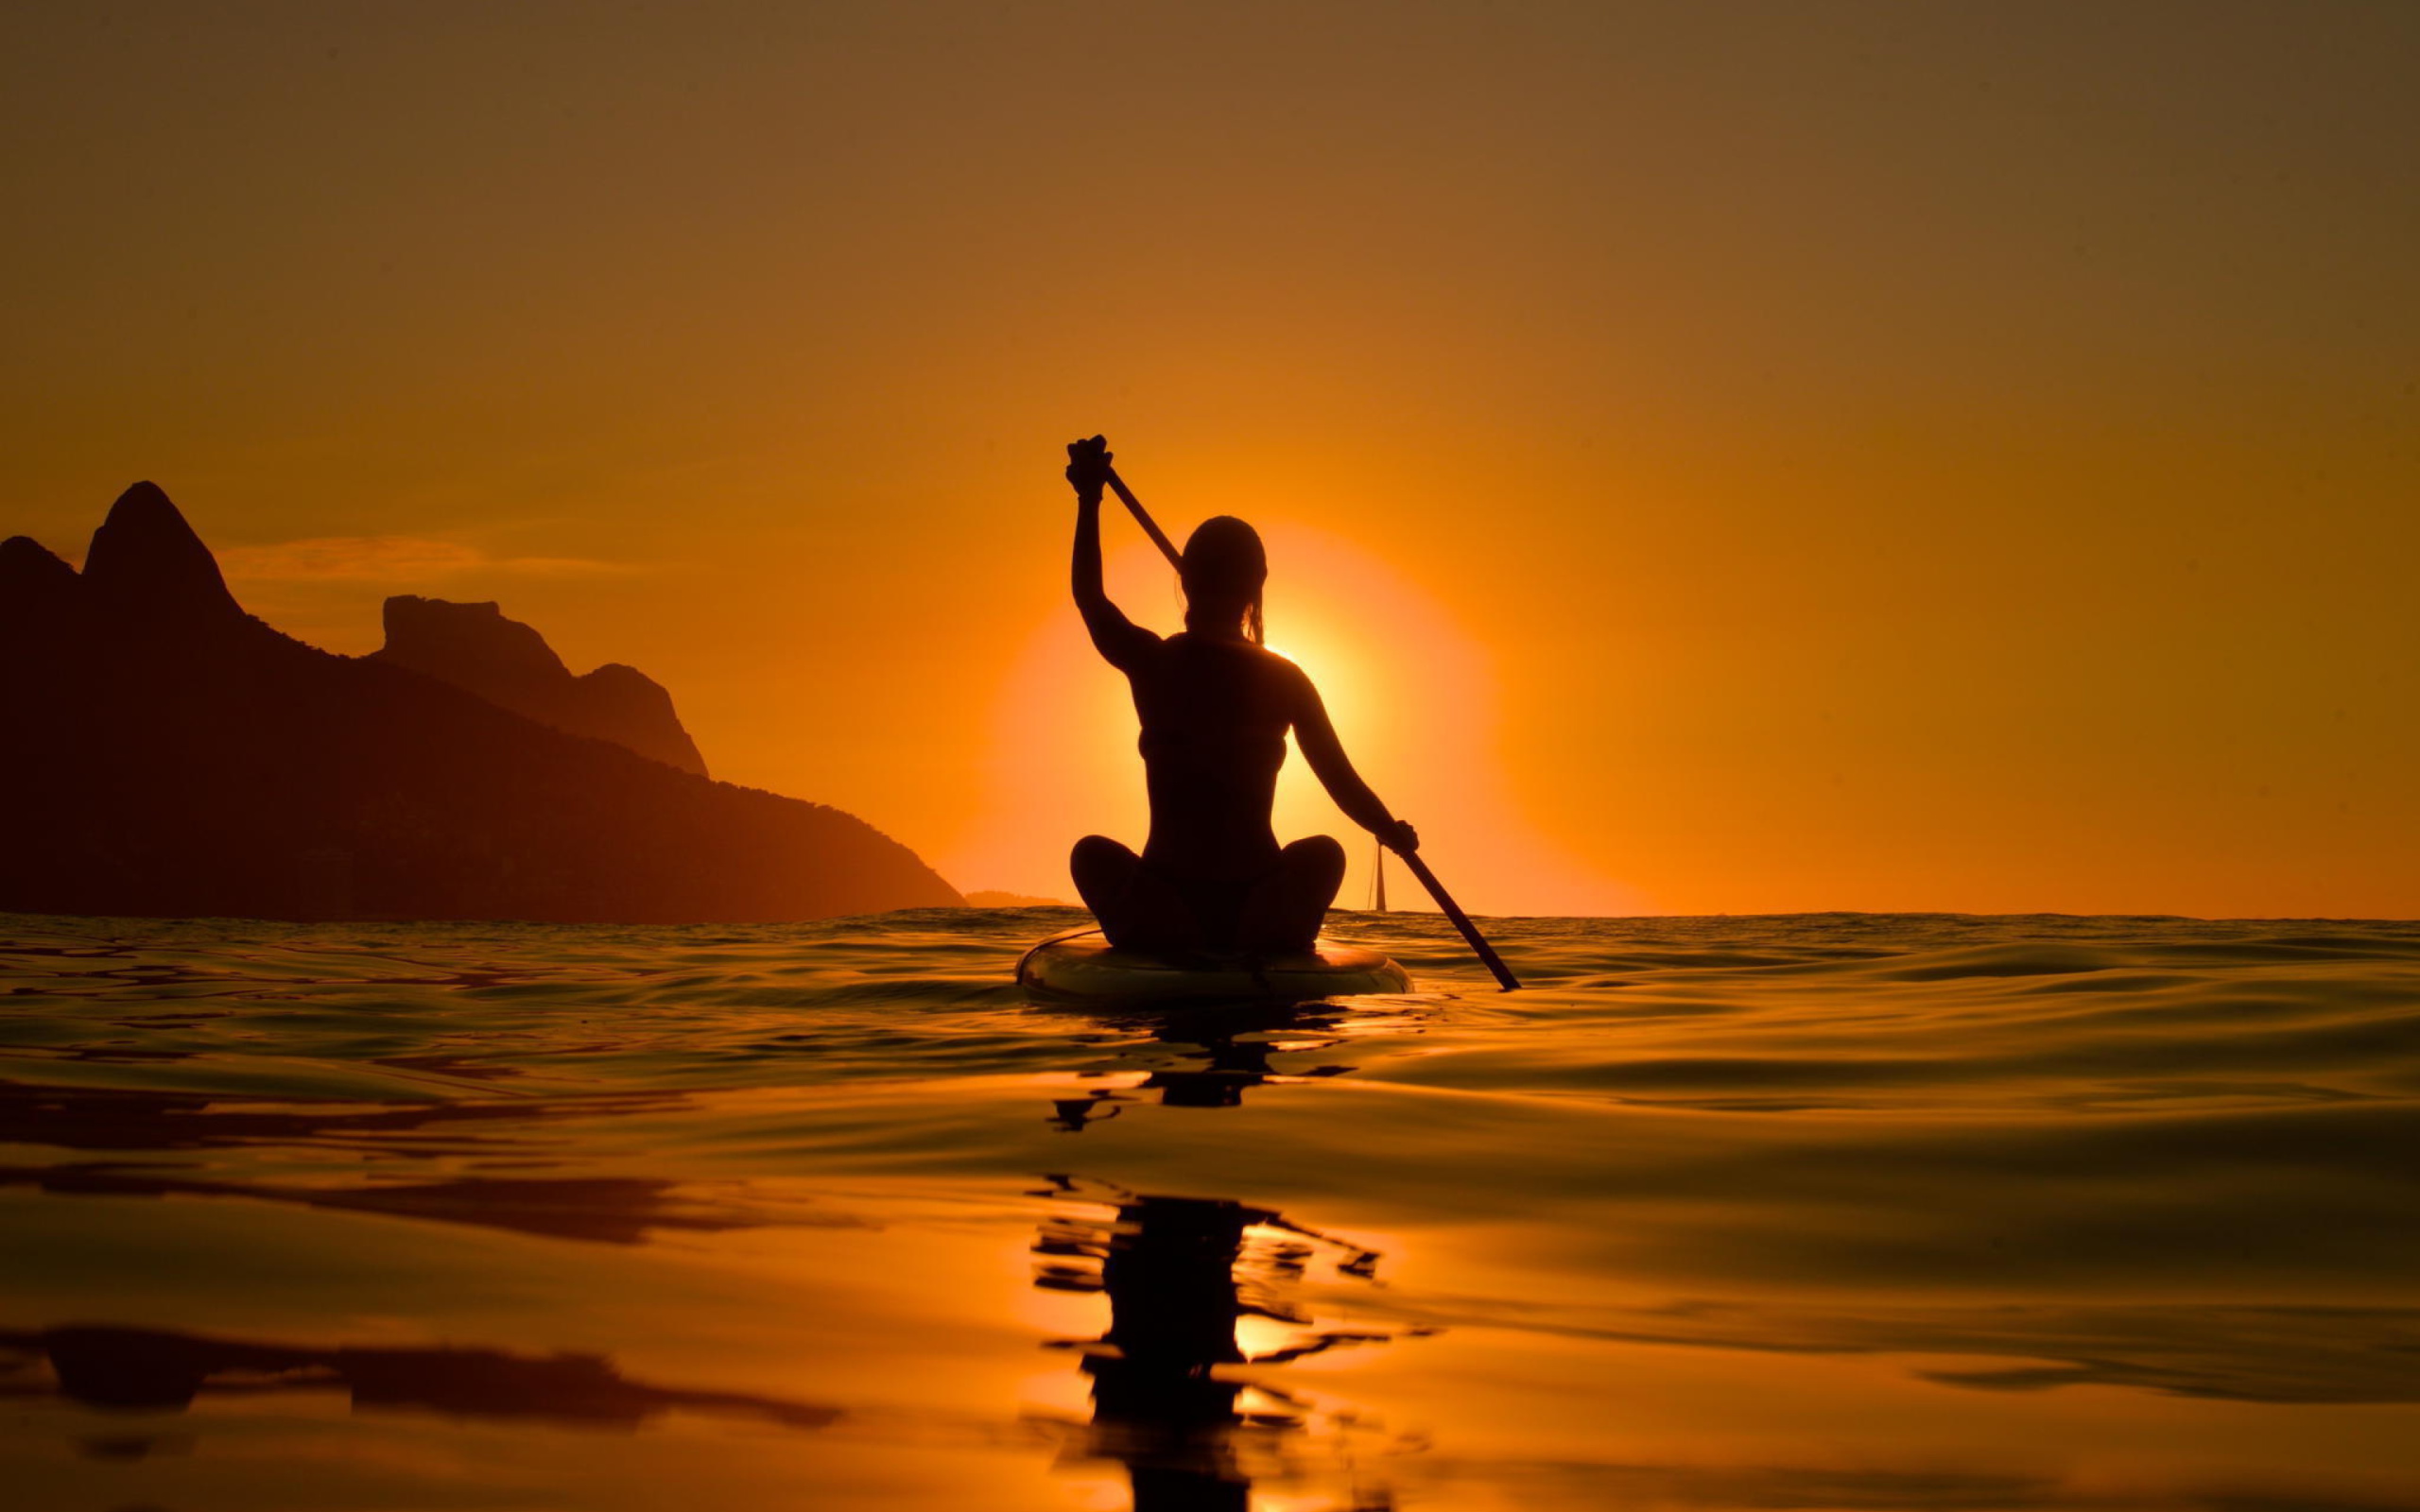 Sunset Surfer wallpaper 2560x1600